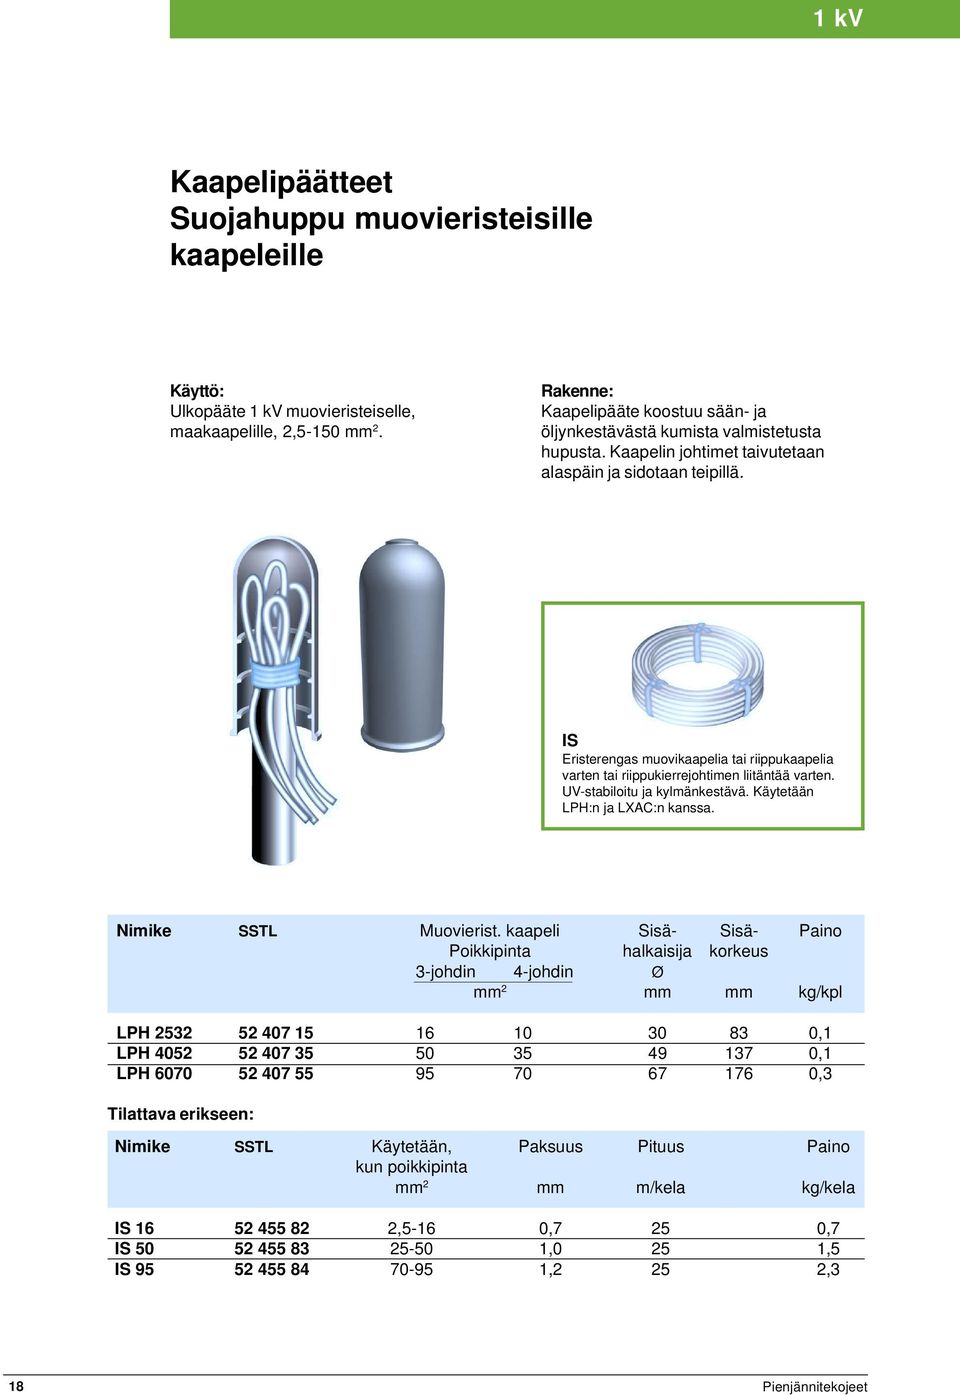 IS Eristerengas muovikaapelia tai riippukaapelia varten tai riippukierrejohtimen liitäntää varten. UV-stabiloitu ja kylmänkestävä. Käytetään LPH:n ja LXAC:n kanssa. Nimike SSTL Muovierist.